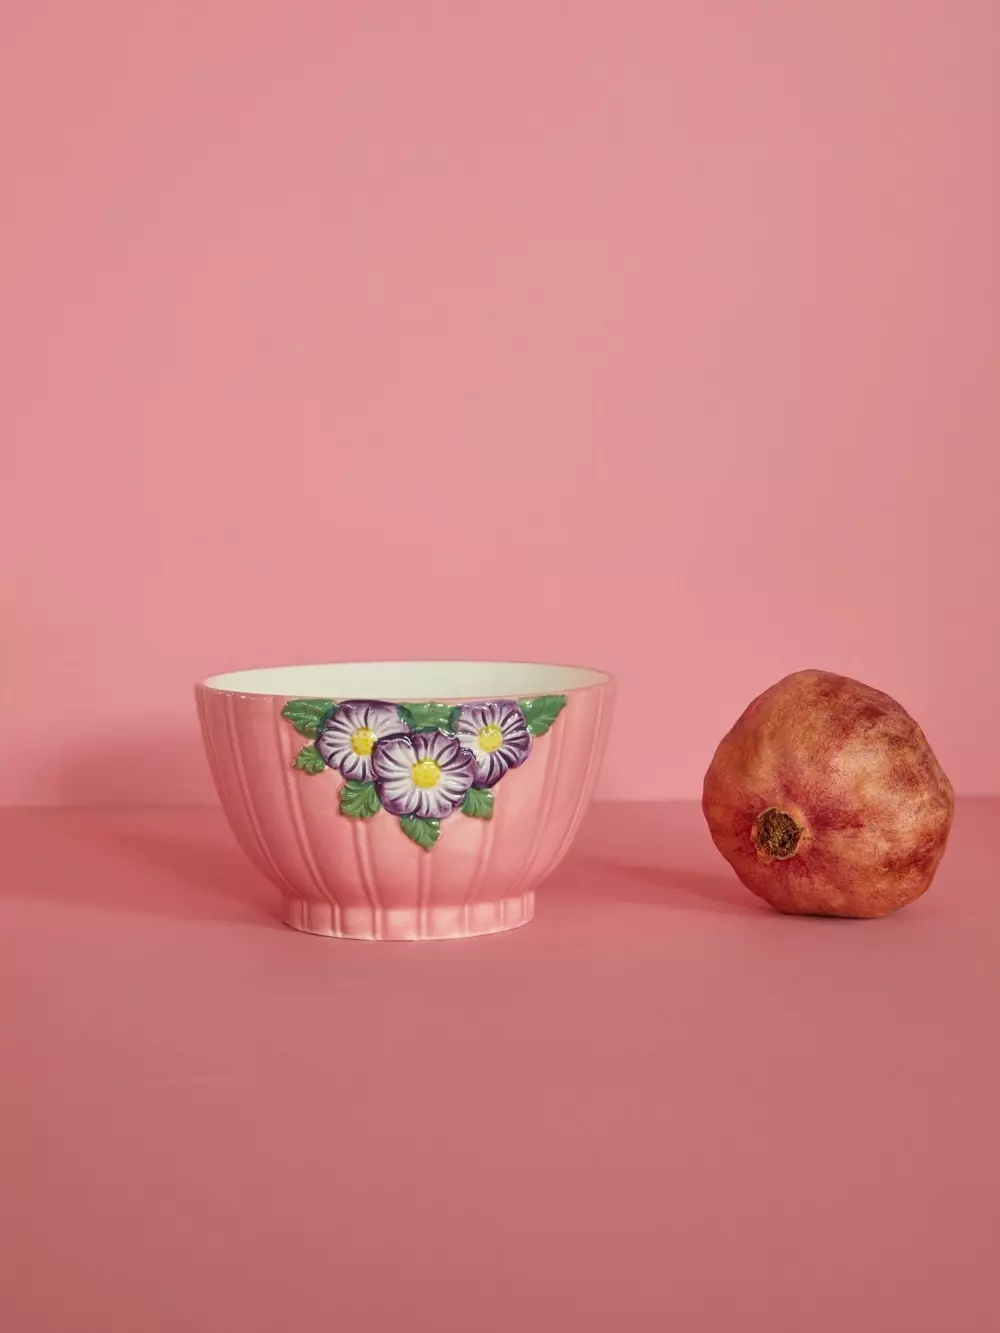 Keramikkbolle Med Blomstermotiv 600ml Rosa, 5708315206296, CEBWL-EMI, Kjøkken, Skåler og Ildfaste Former, Rice, Ceramic Bowl with Embossed Flower Design - Pink - 600 ml